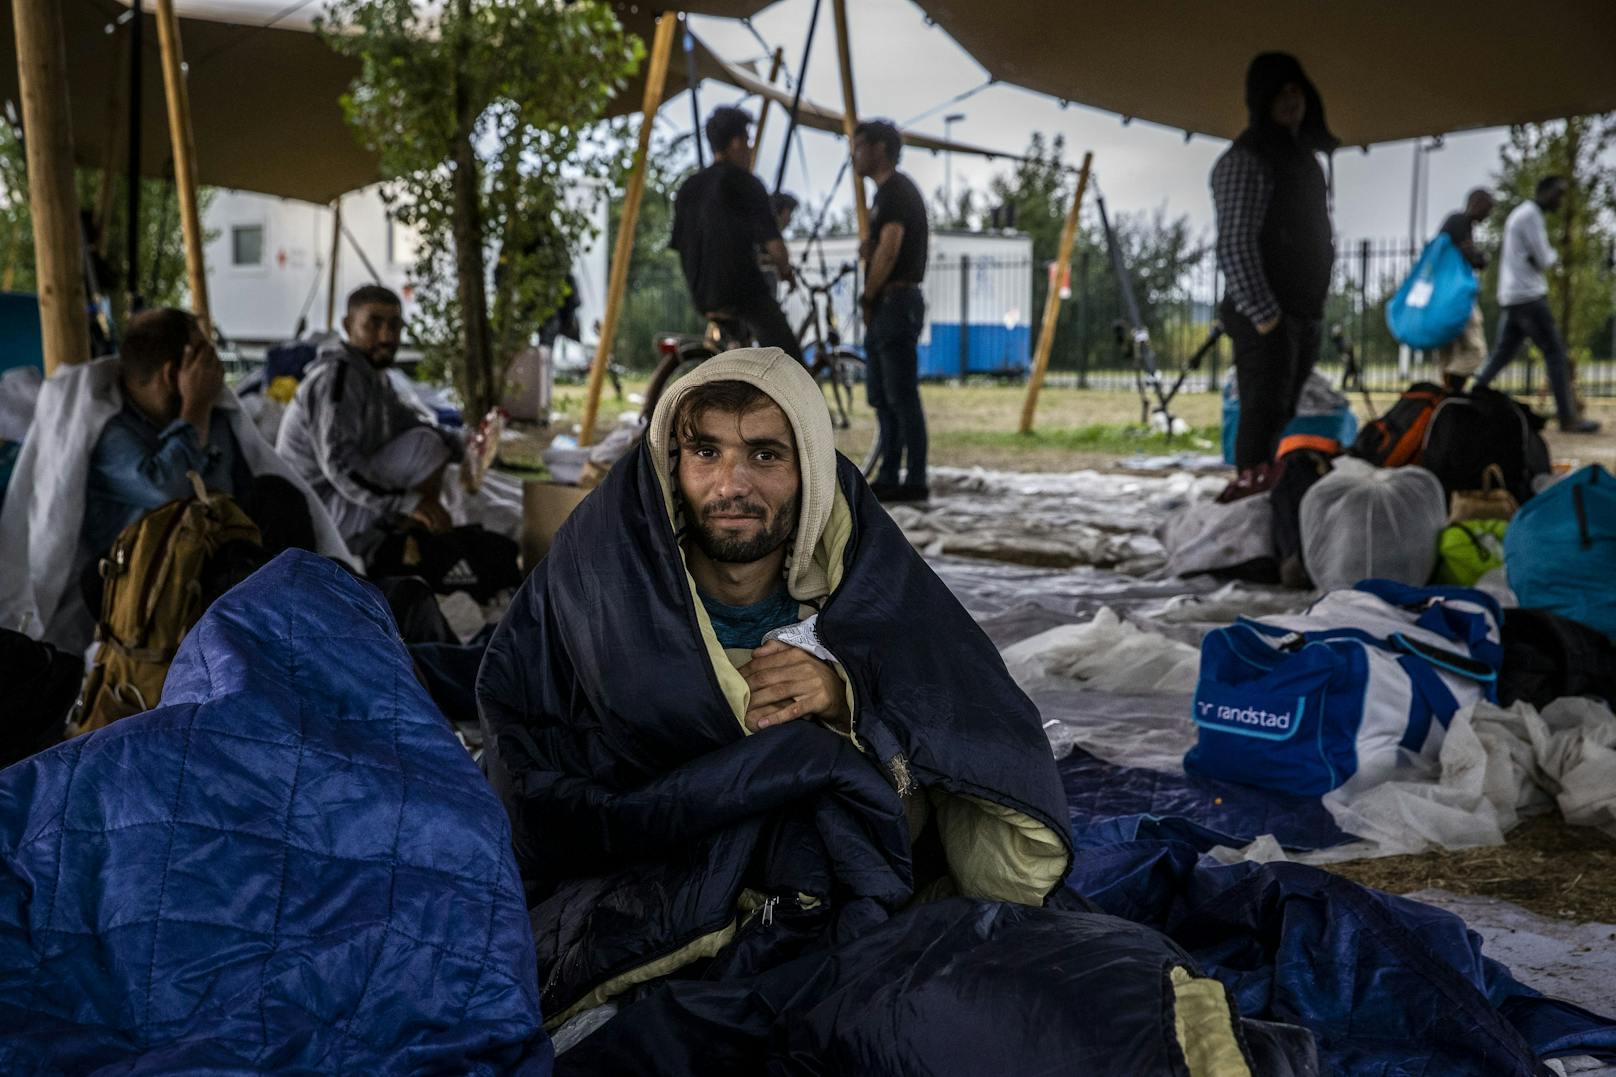 17.08.22: 17.08.22: Trotz der zermürbenden Monate in dem Asylzentrum verlieren die Menschen nicht die Hoffnung auf besserer Tage.